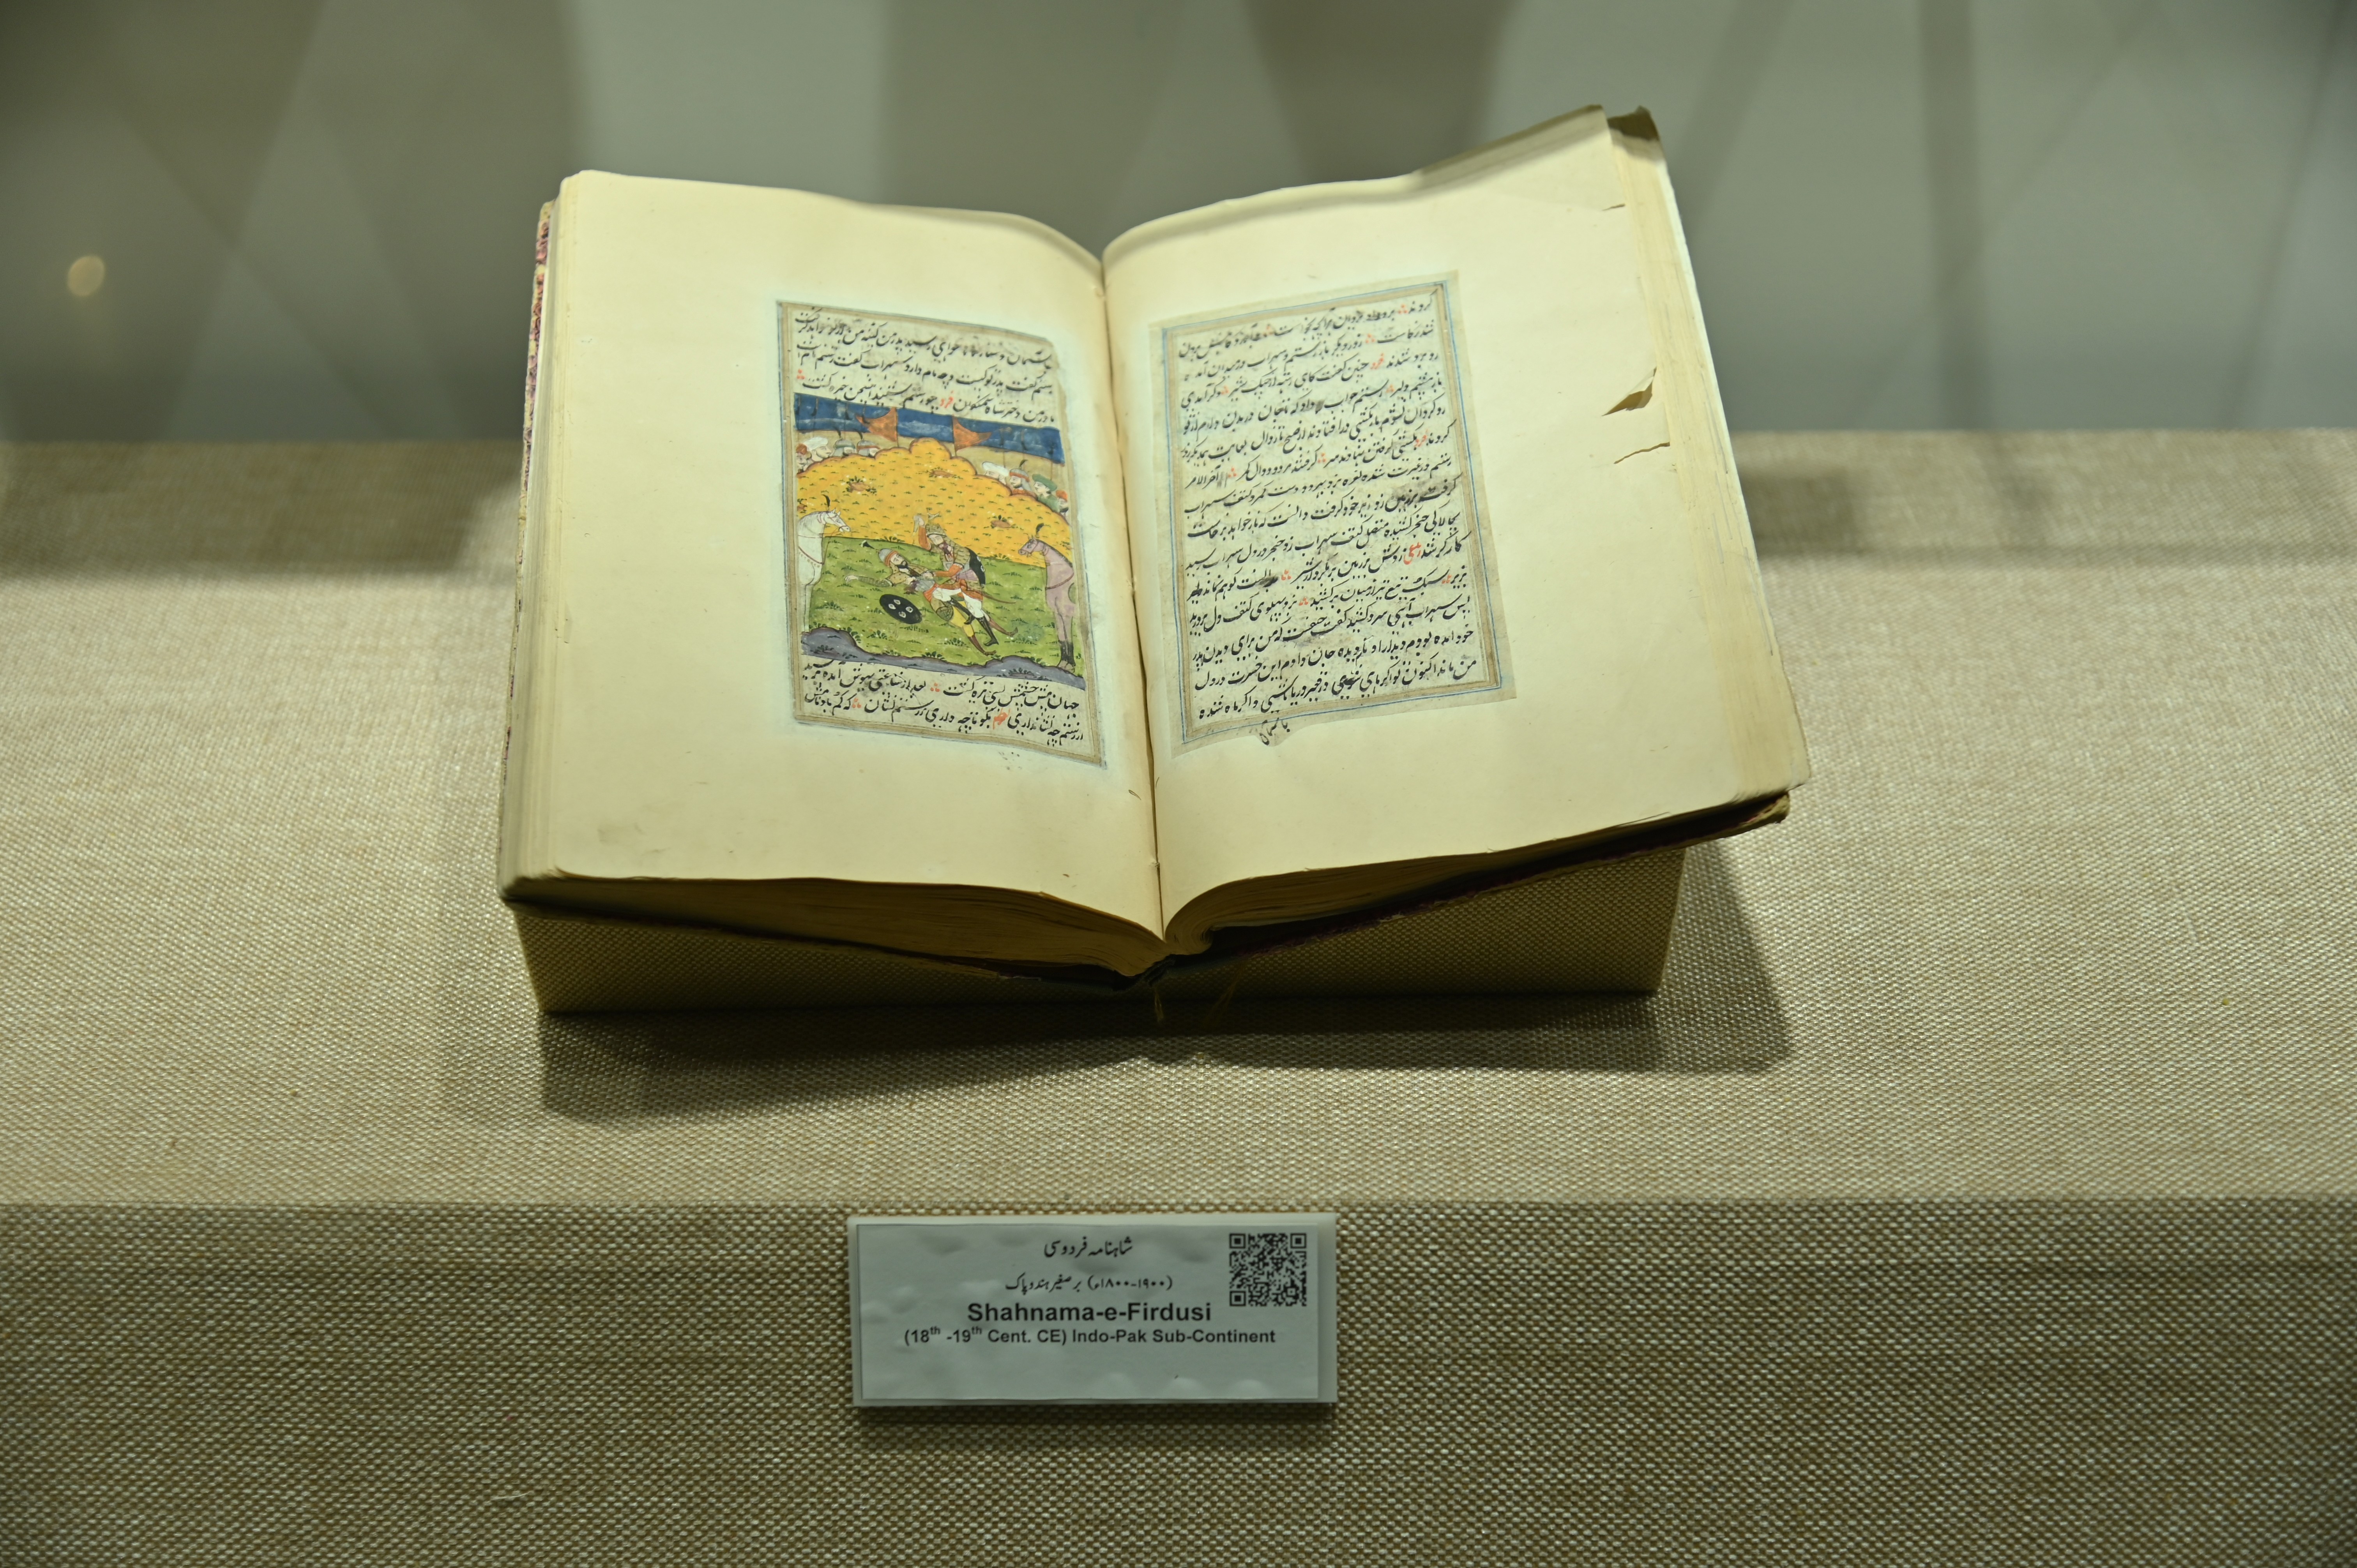 The Shahnama-e-Firdusi manuscript of 18th-19th century